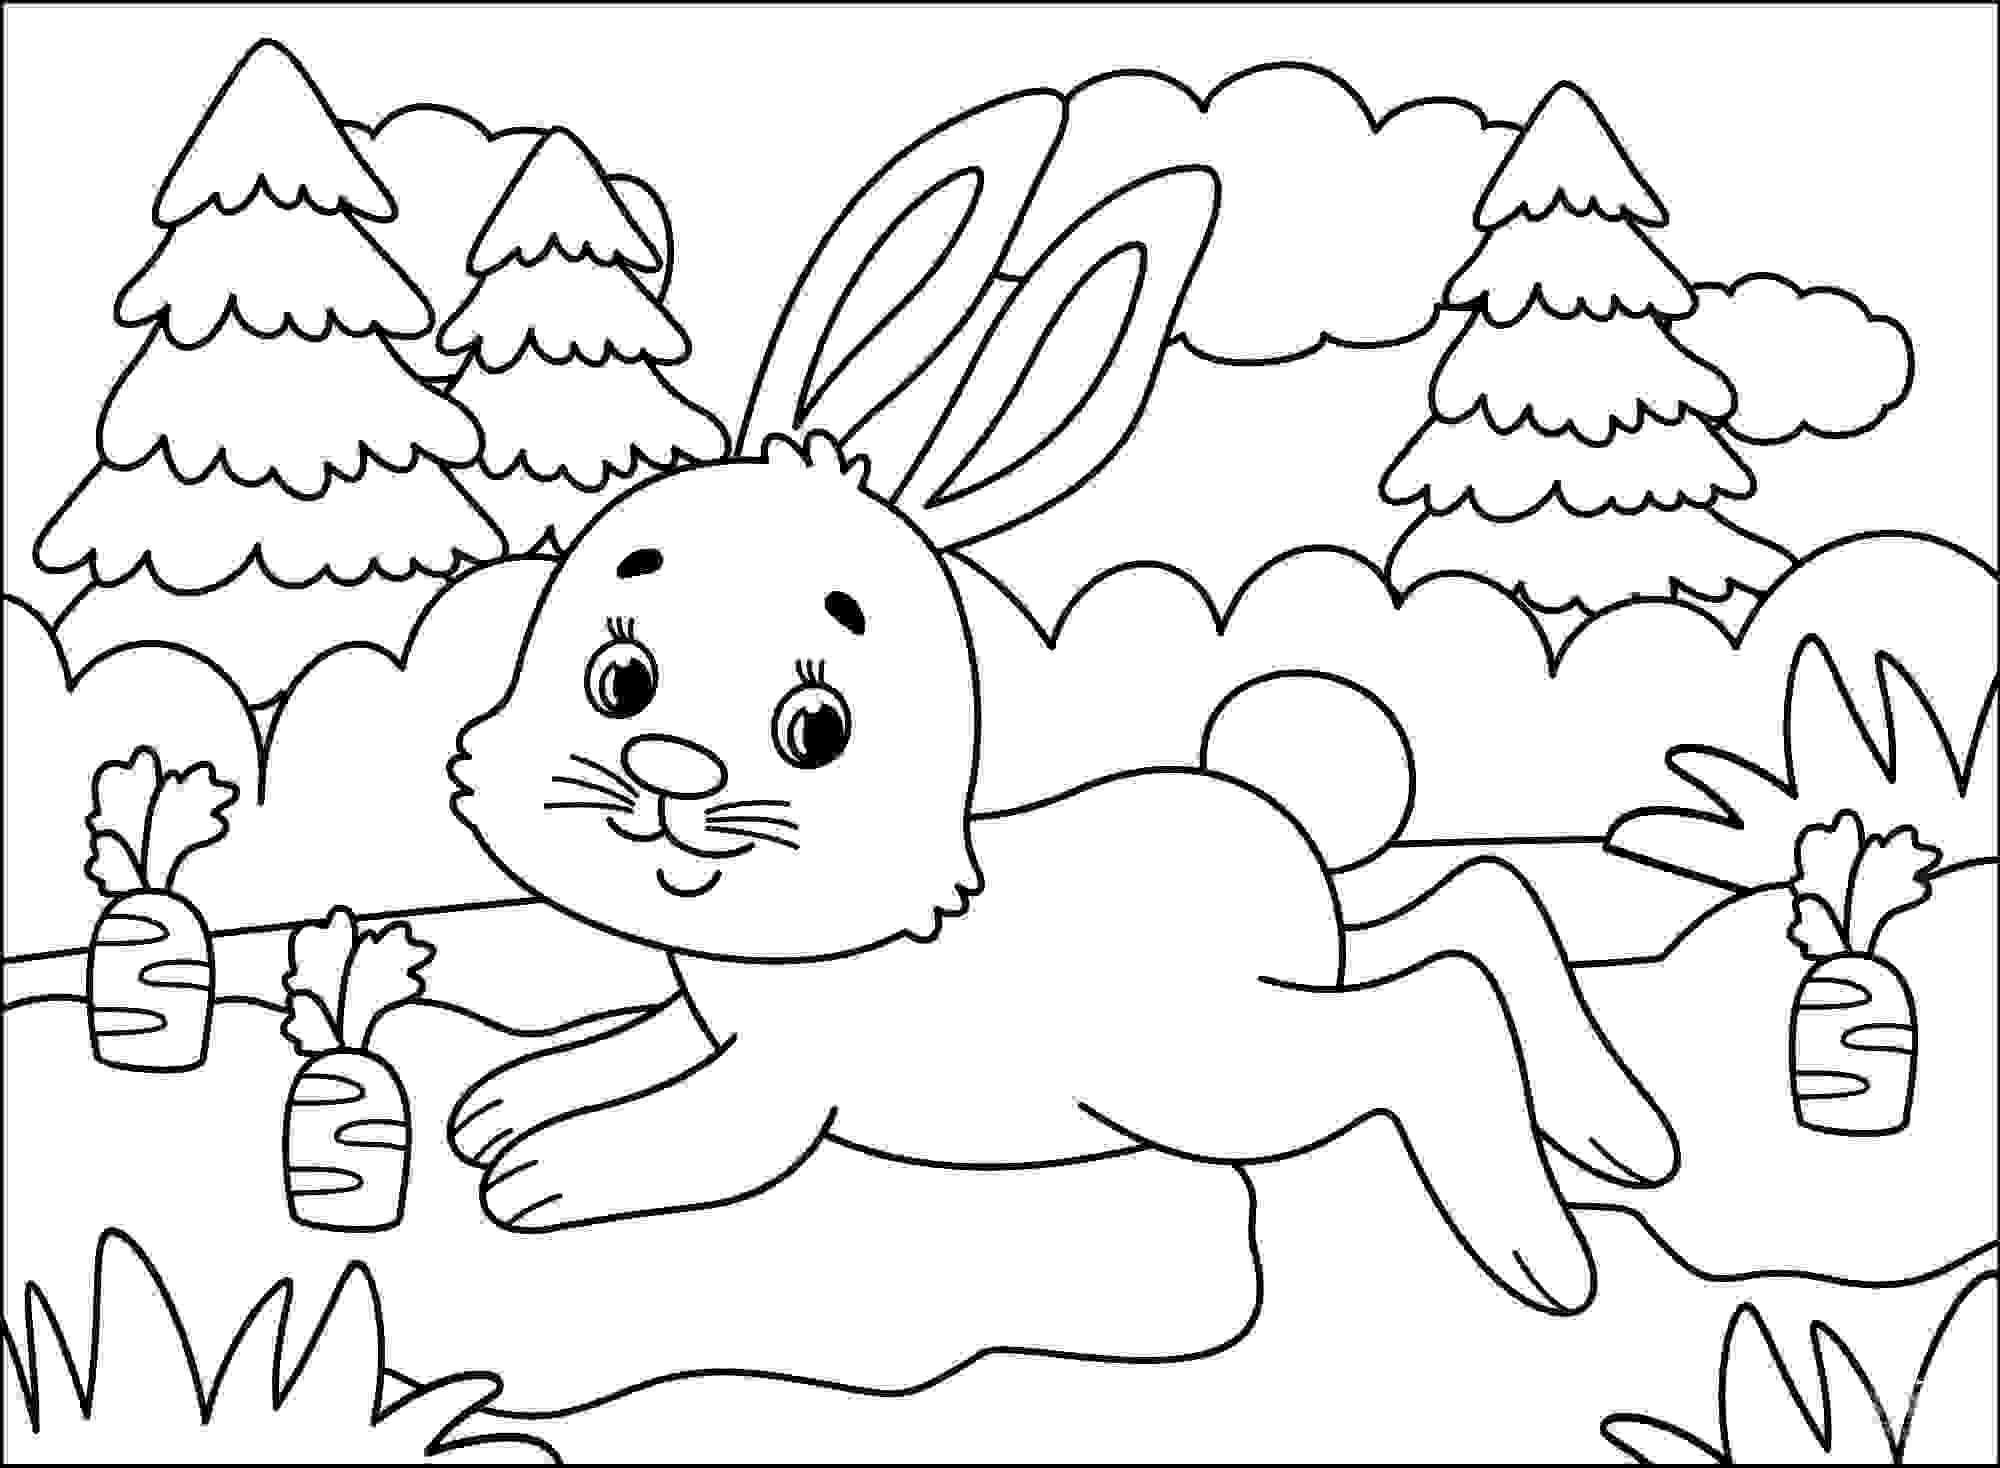 Conejito con muchas zanahorias en el bosque de Bunny